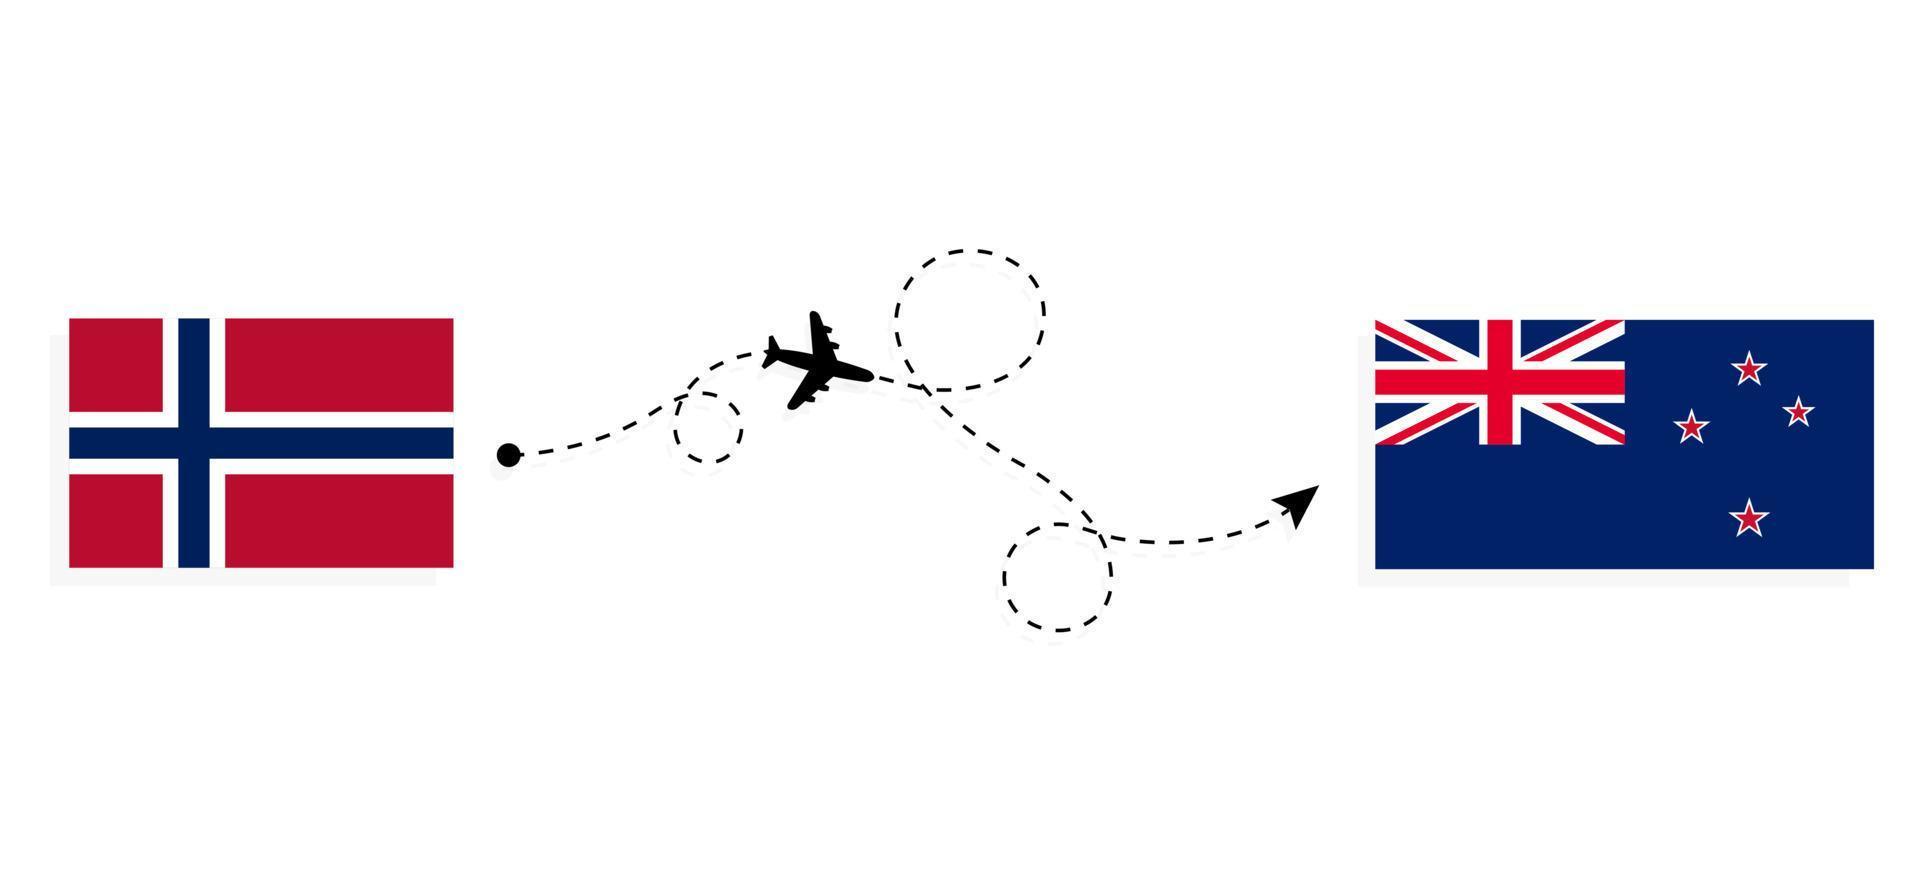 vol et voyage de la norvège vers la nouvelle-zélande par concept de voyage en avion de passagers vecteur